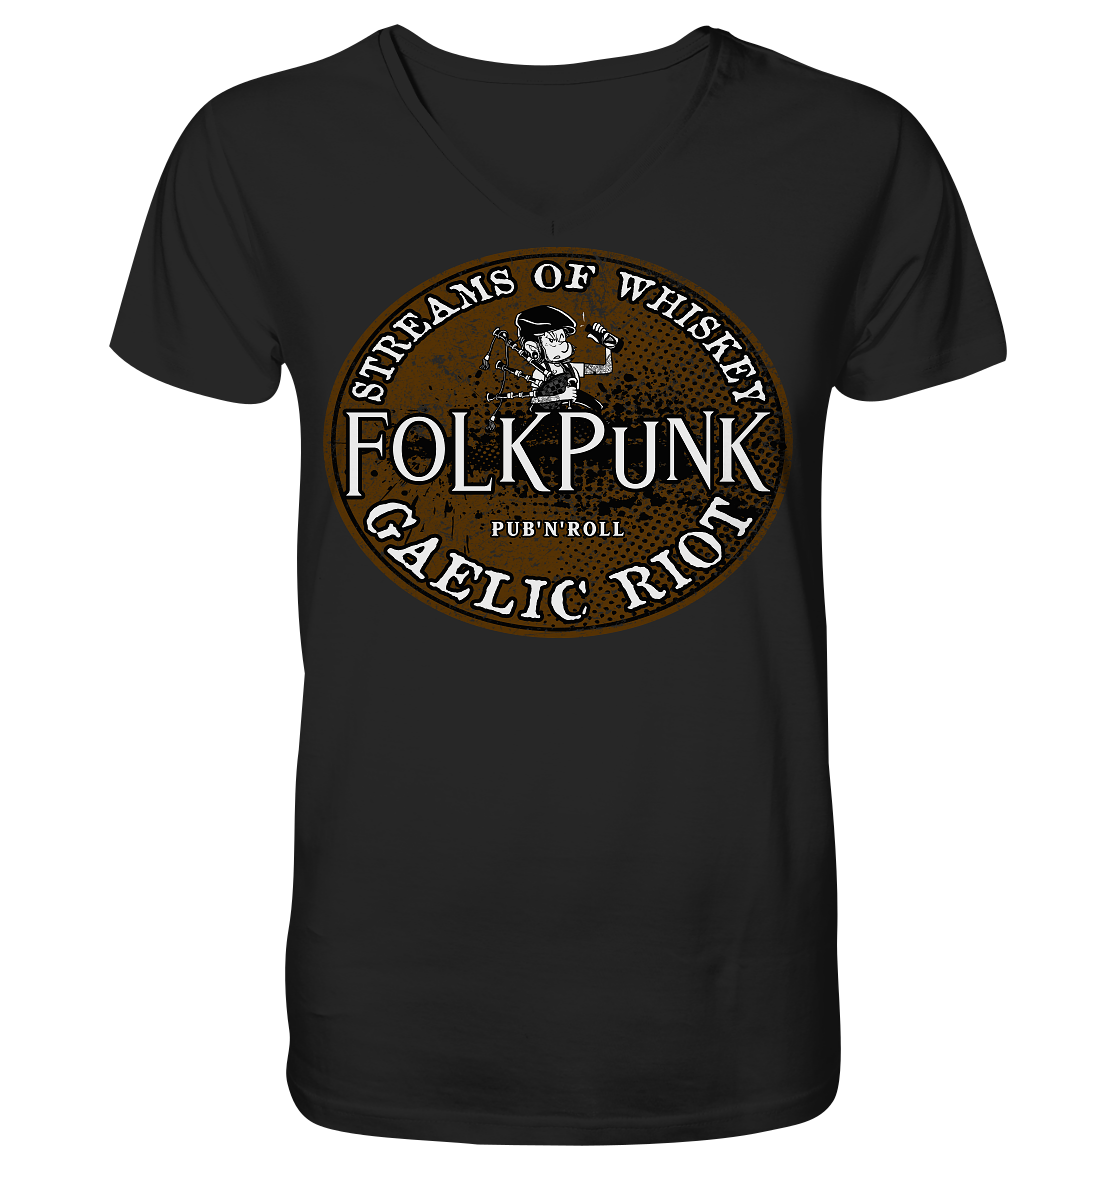 Folkpunk "Streams Of Whiskey" - V-Neck Shirt